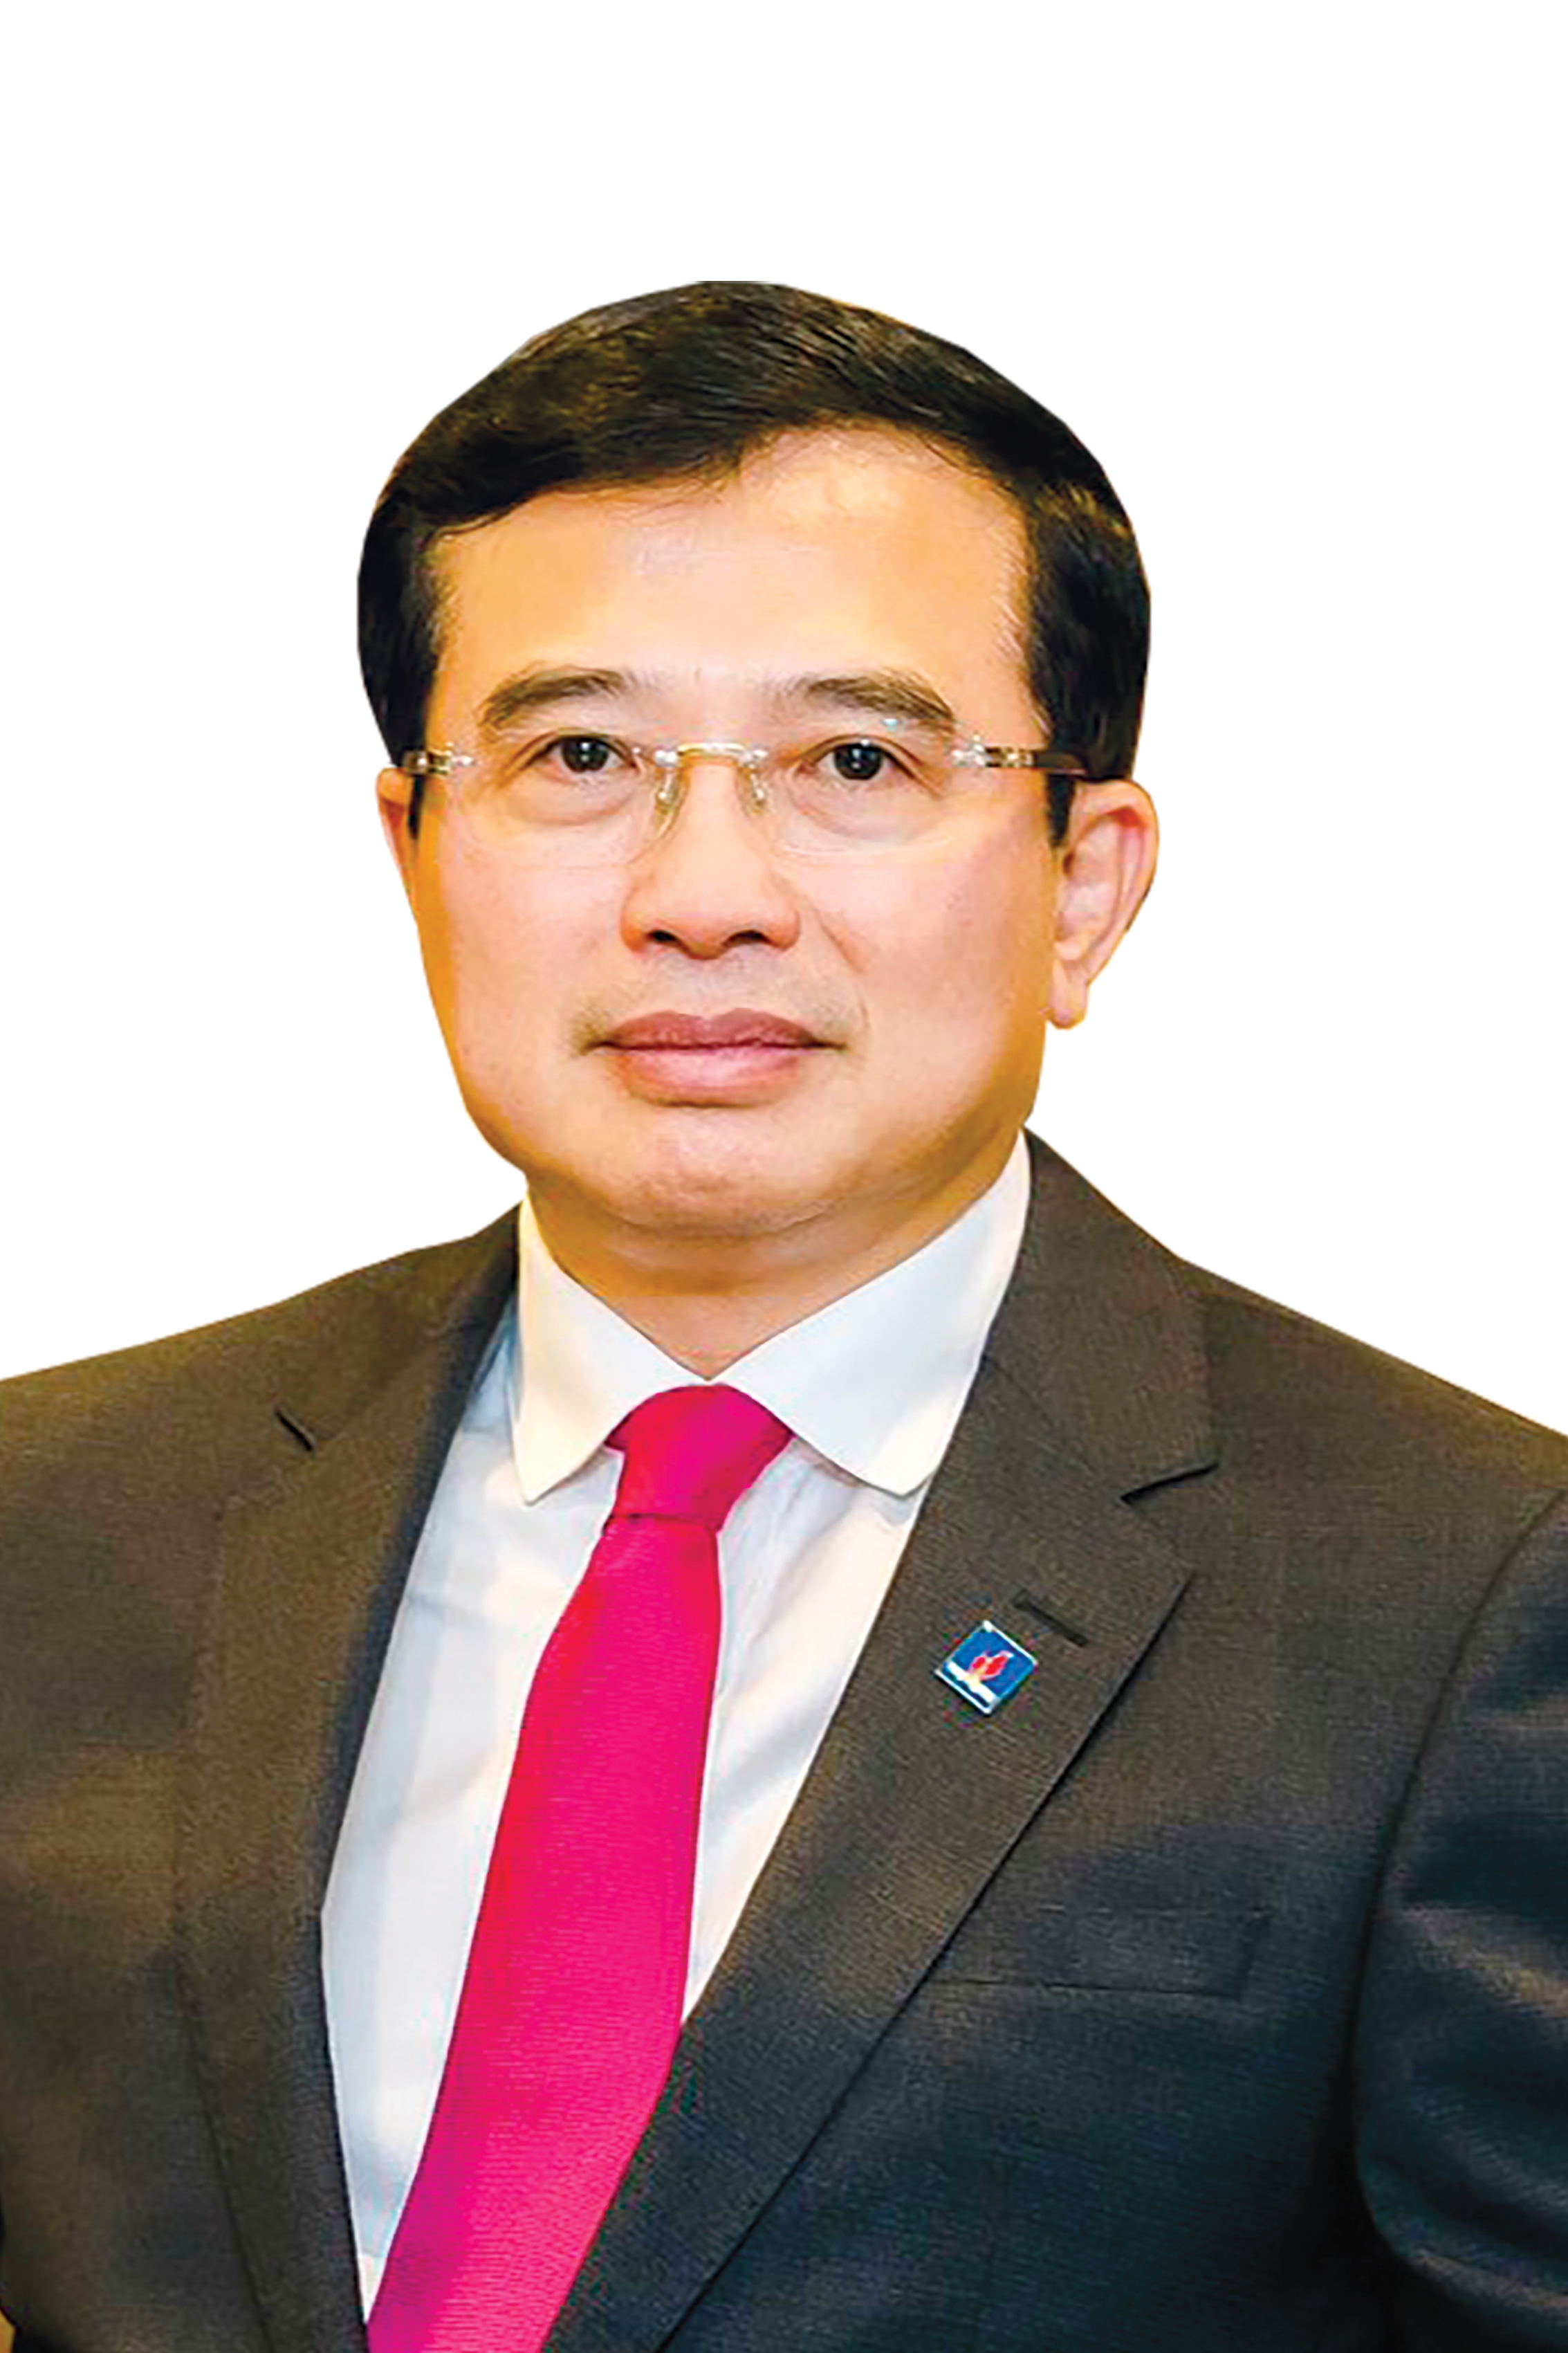 Đồng chí Hoàng Quốc Vượng - Bí thư Đảng ủy, Chủ tịch Hội đồng Thành viên Tập đoàn Dầu khí Quốc gia Việt Nam